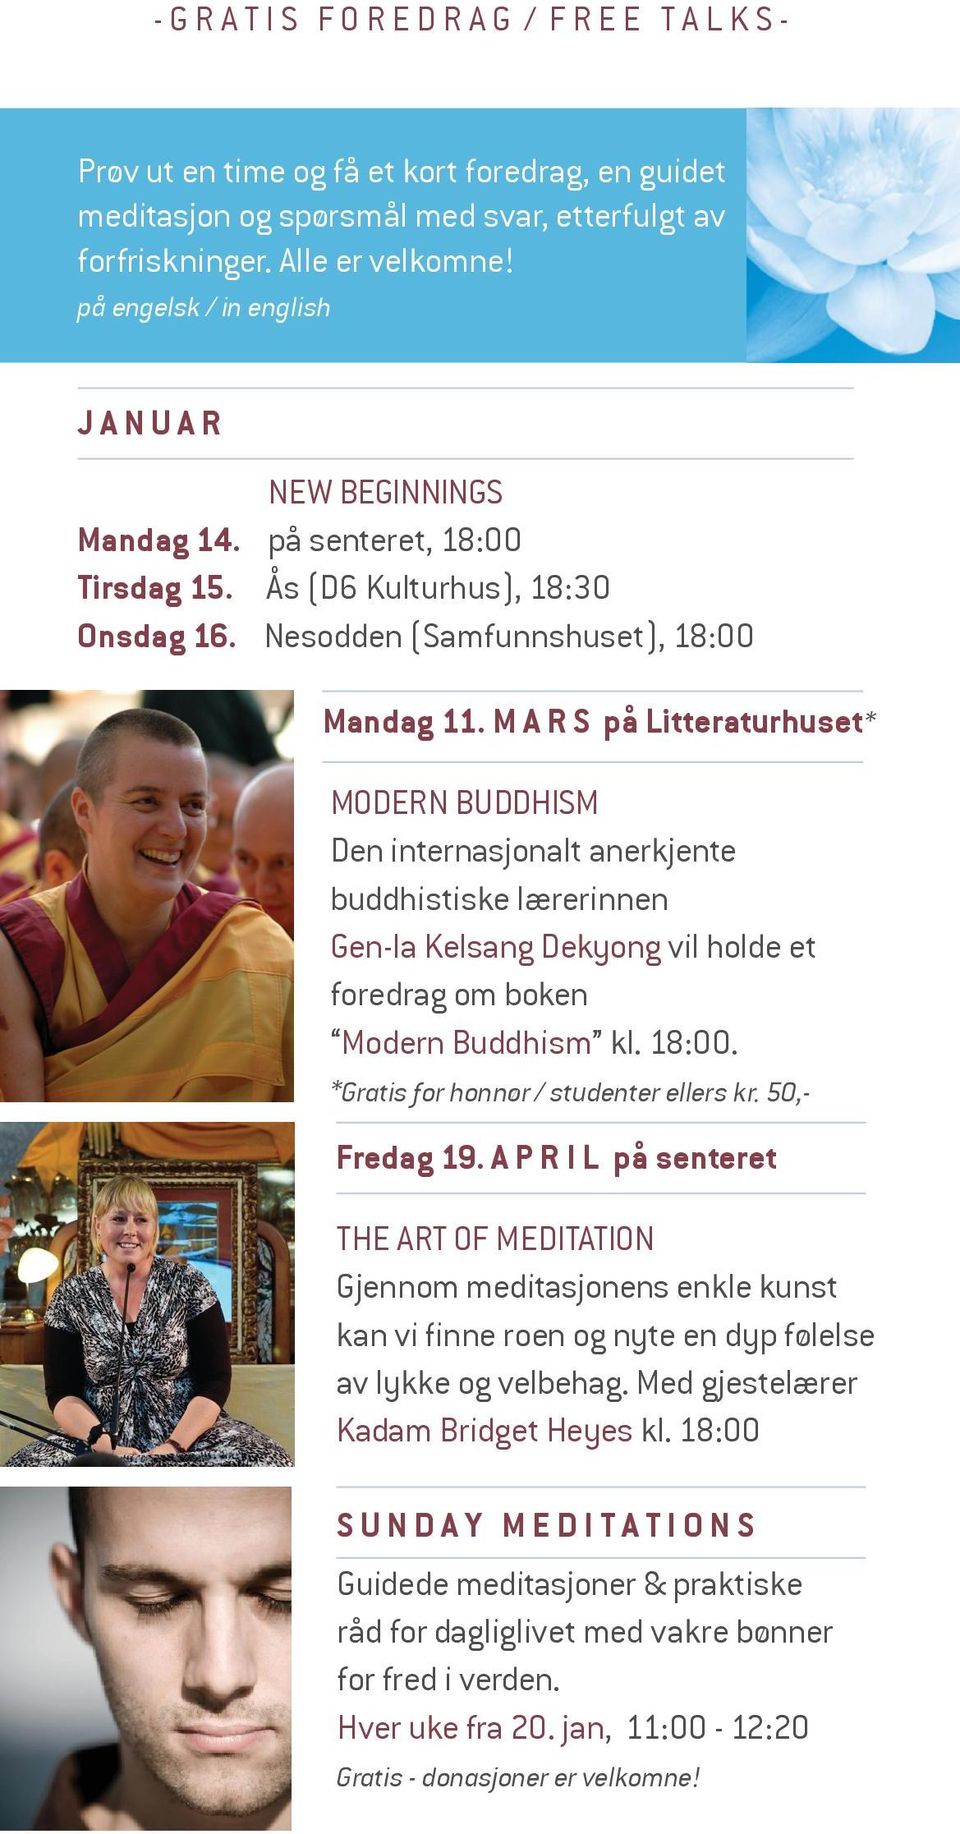 M A R S på Litteraturhuset* MODERN BUDDHISM Den internasjonalt anerkjente buddhistiske lærerinnen Gen-la Kelsang Dekyong vil holde et foredrag om boken Modern Buddhism kl. 18:00.